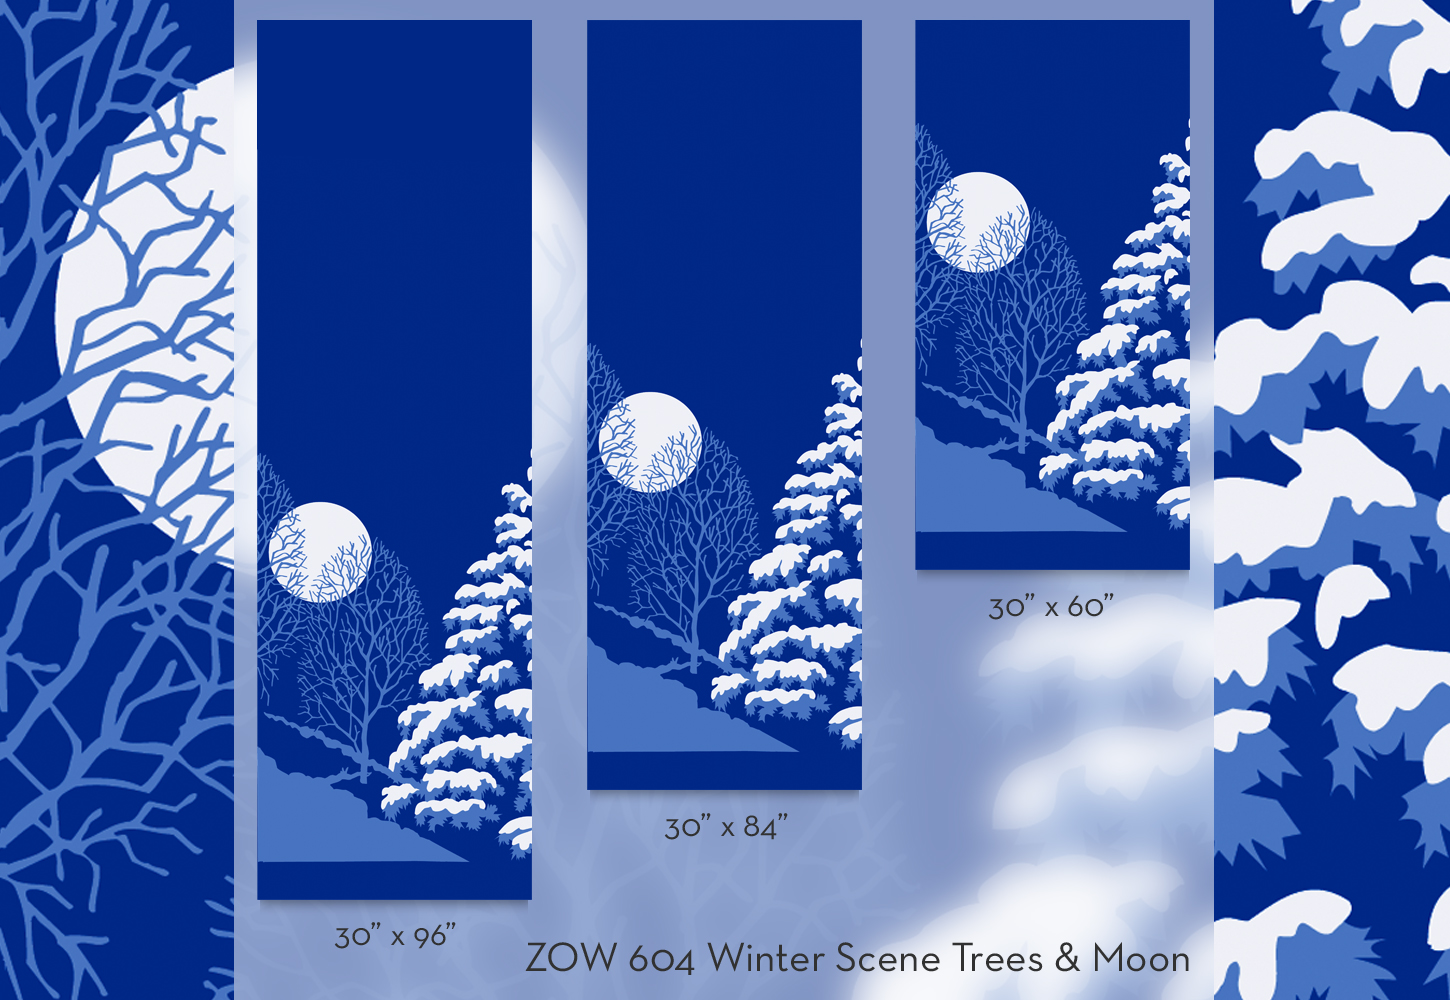 ZOW 604 Winter Scene Trees & Moon